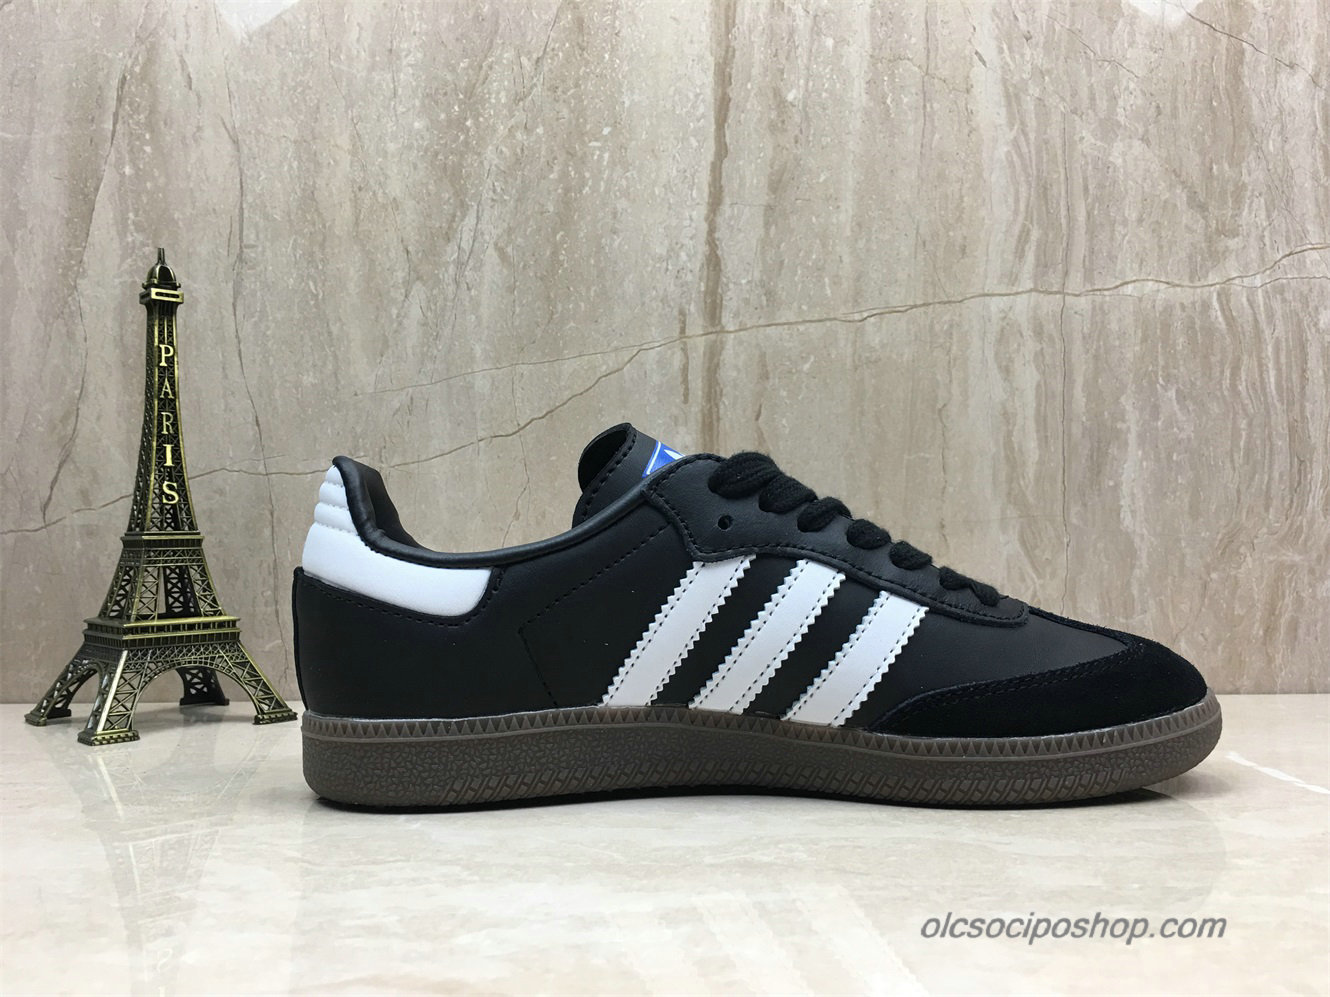 Adidas Samba OG Fekete/Fehér Cipők (B75807)